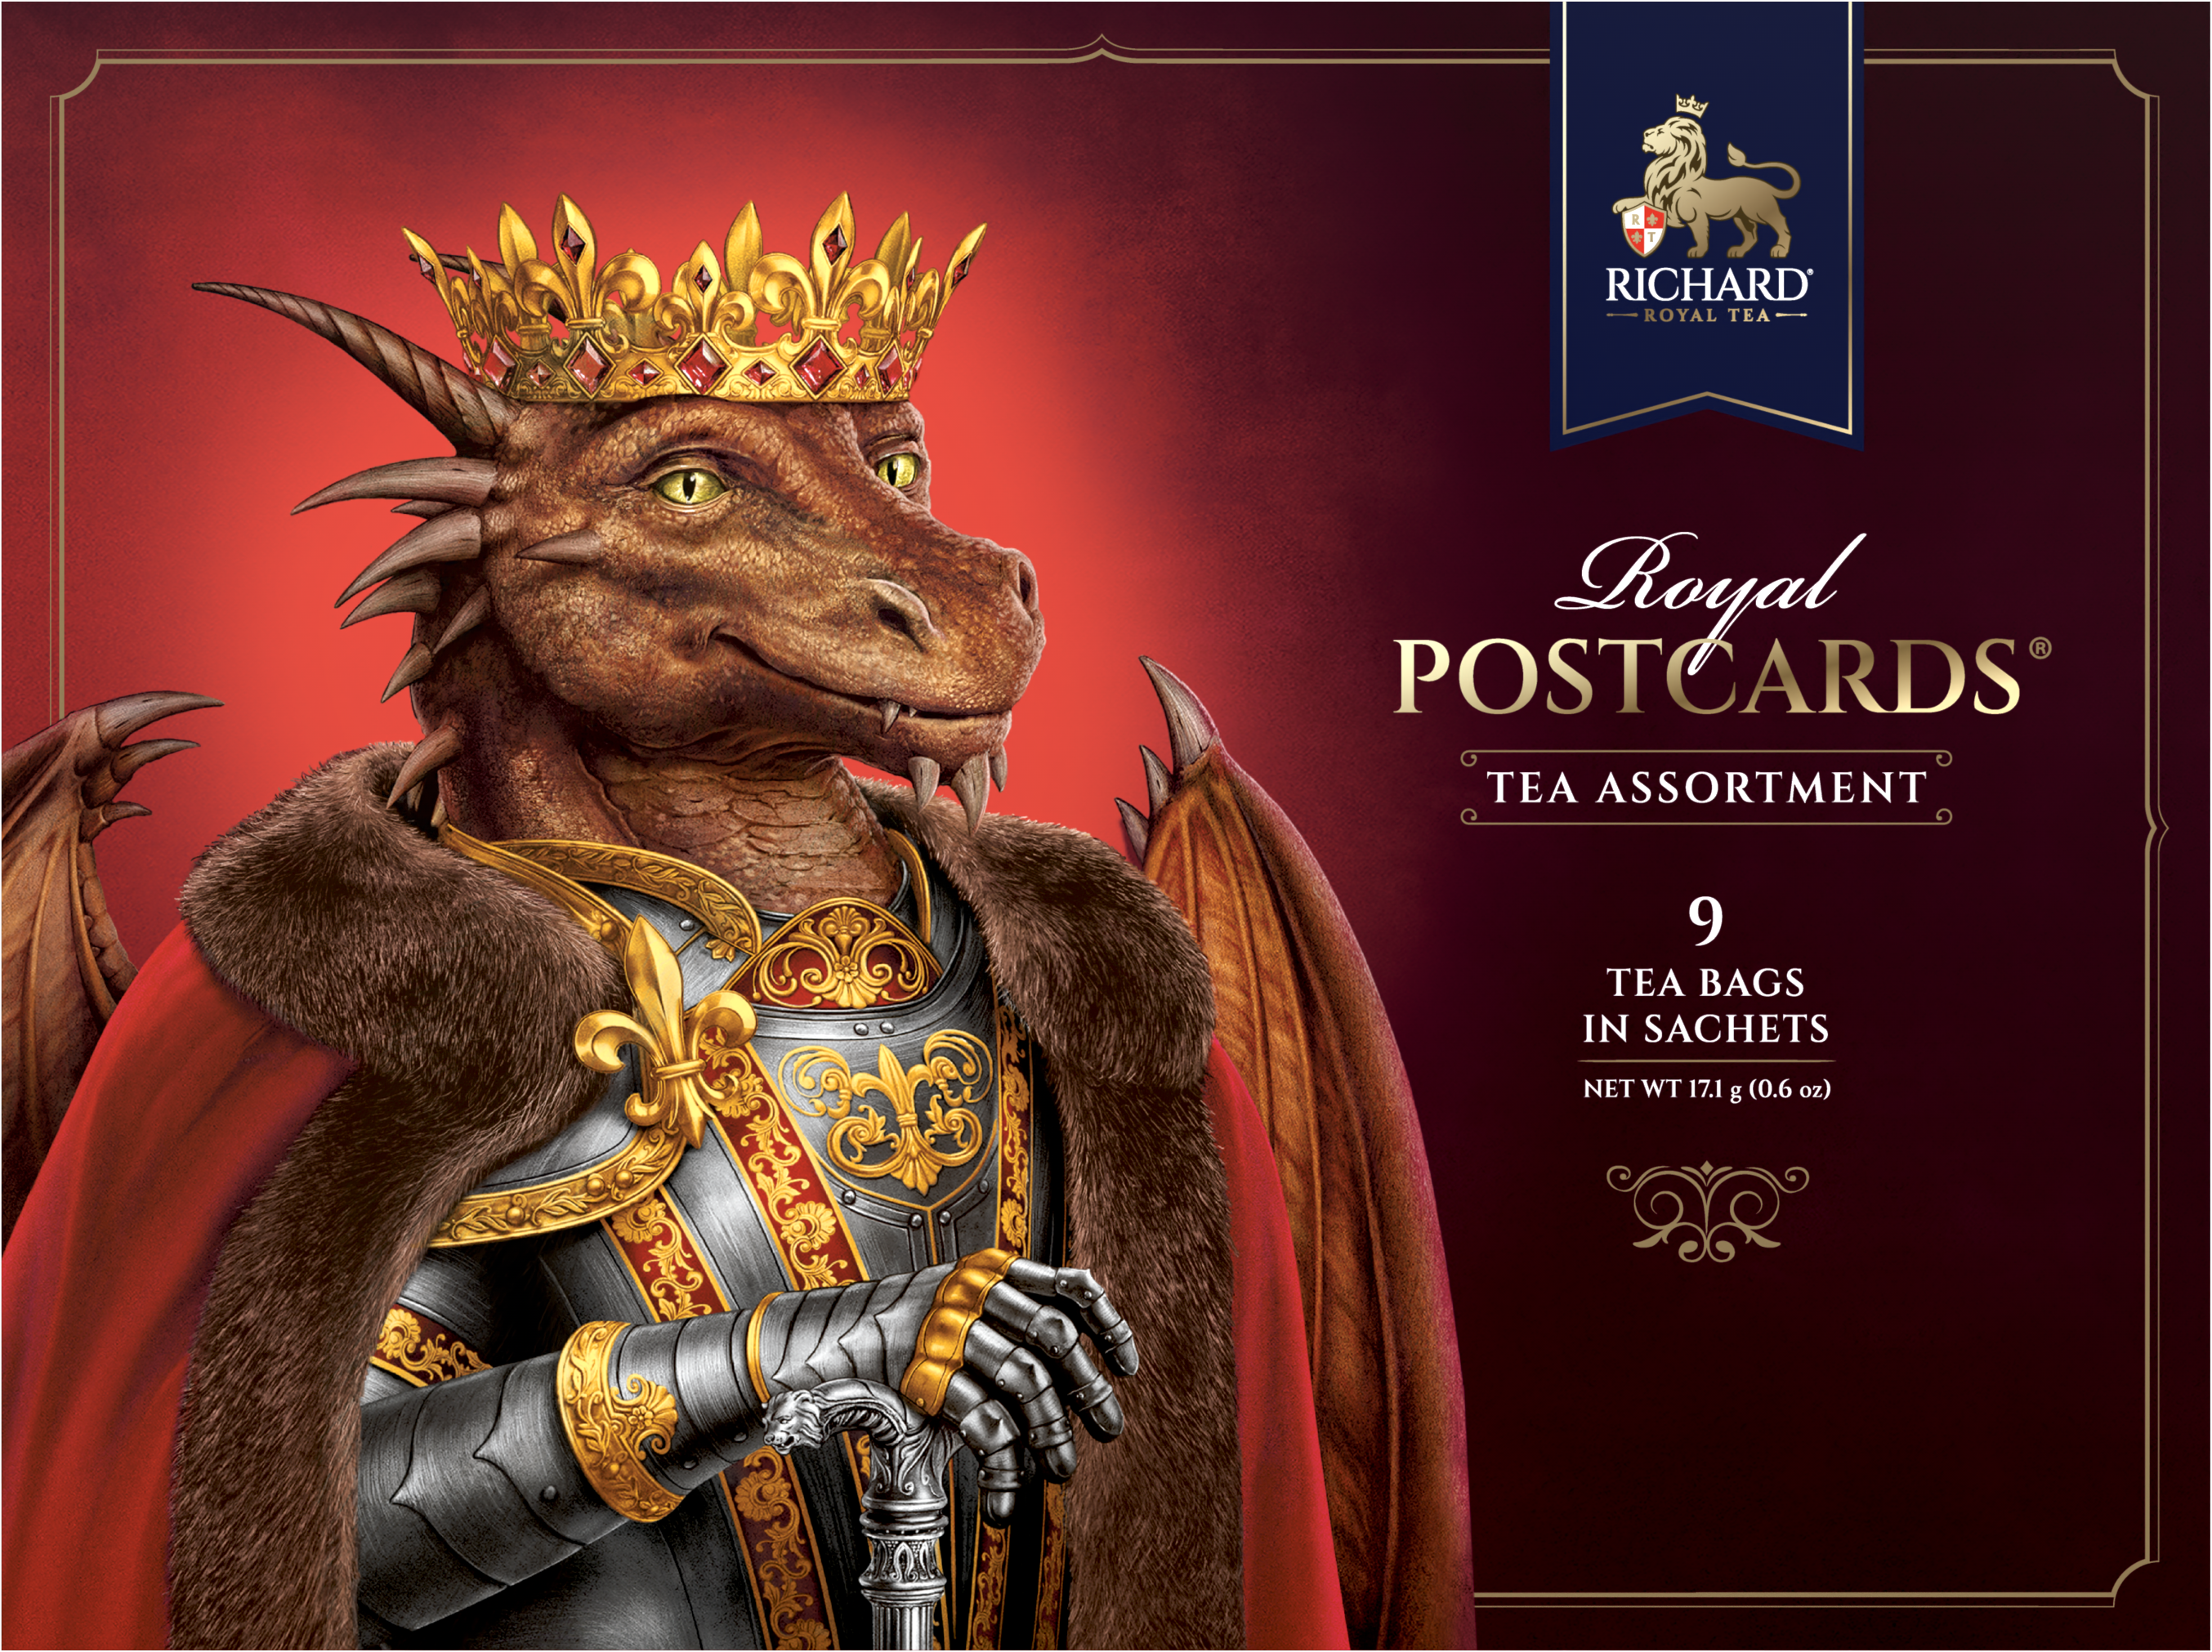 Royal Postcards Tea Assortment, Year of the Royal Dragon King, assorted tea - 9 sachets